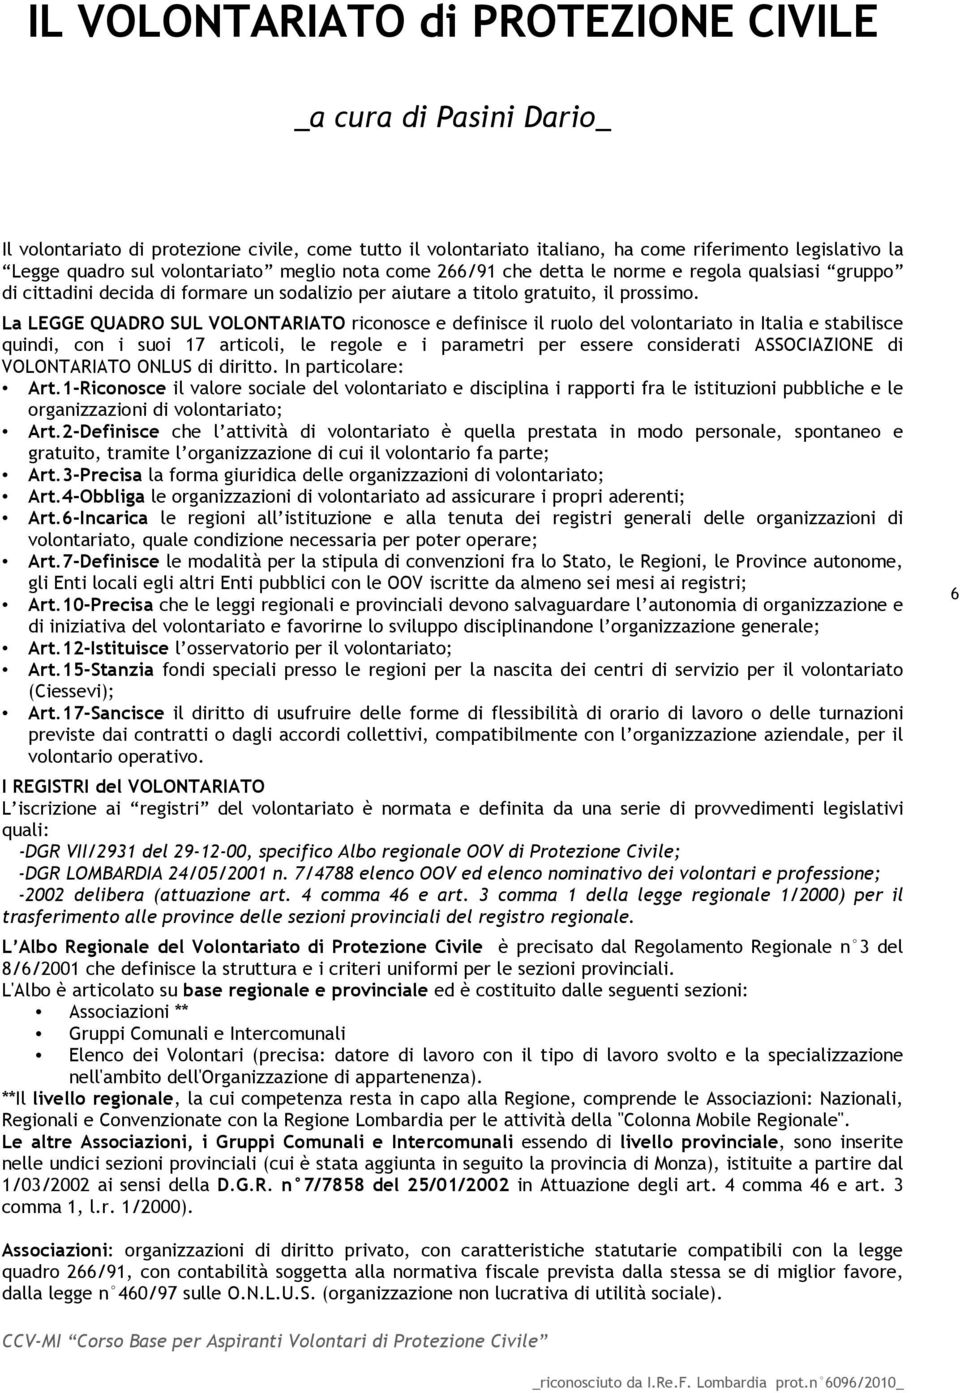 La LEGGE QUADRO SUL VOLONTARIATO riconosce e definisce il ruolo del volontariato in Italia e stabilisce quindi, con i suoi 17 articoli, le regole e i parametri per essere considerati ASSOCIAZIONE di